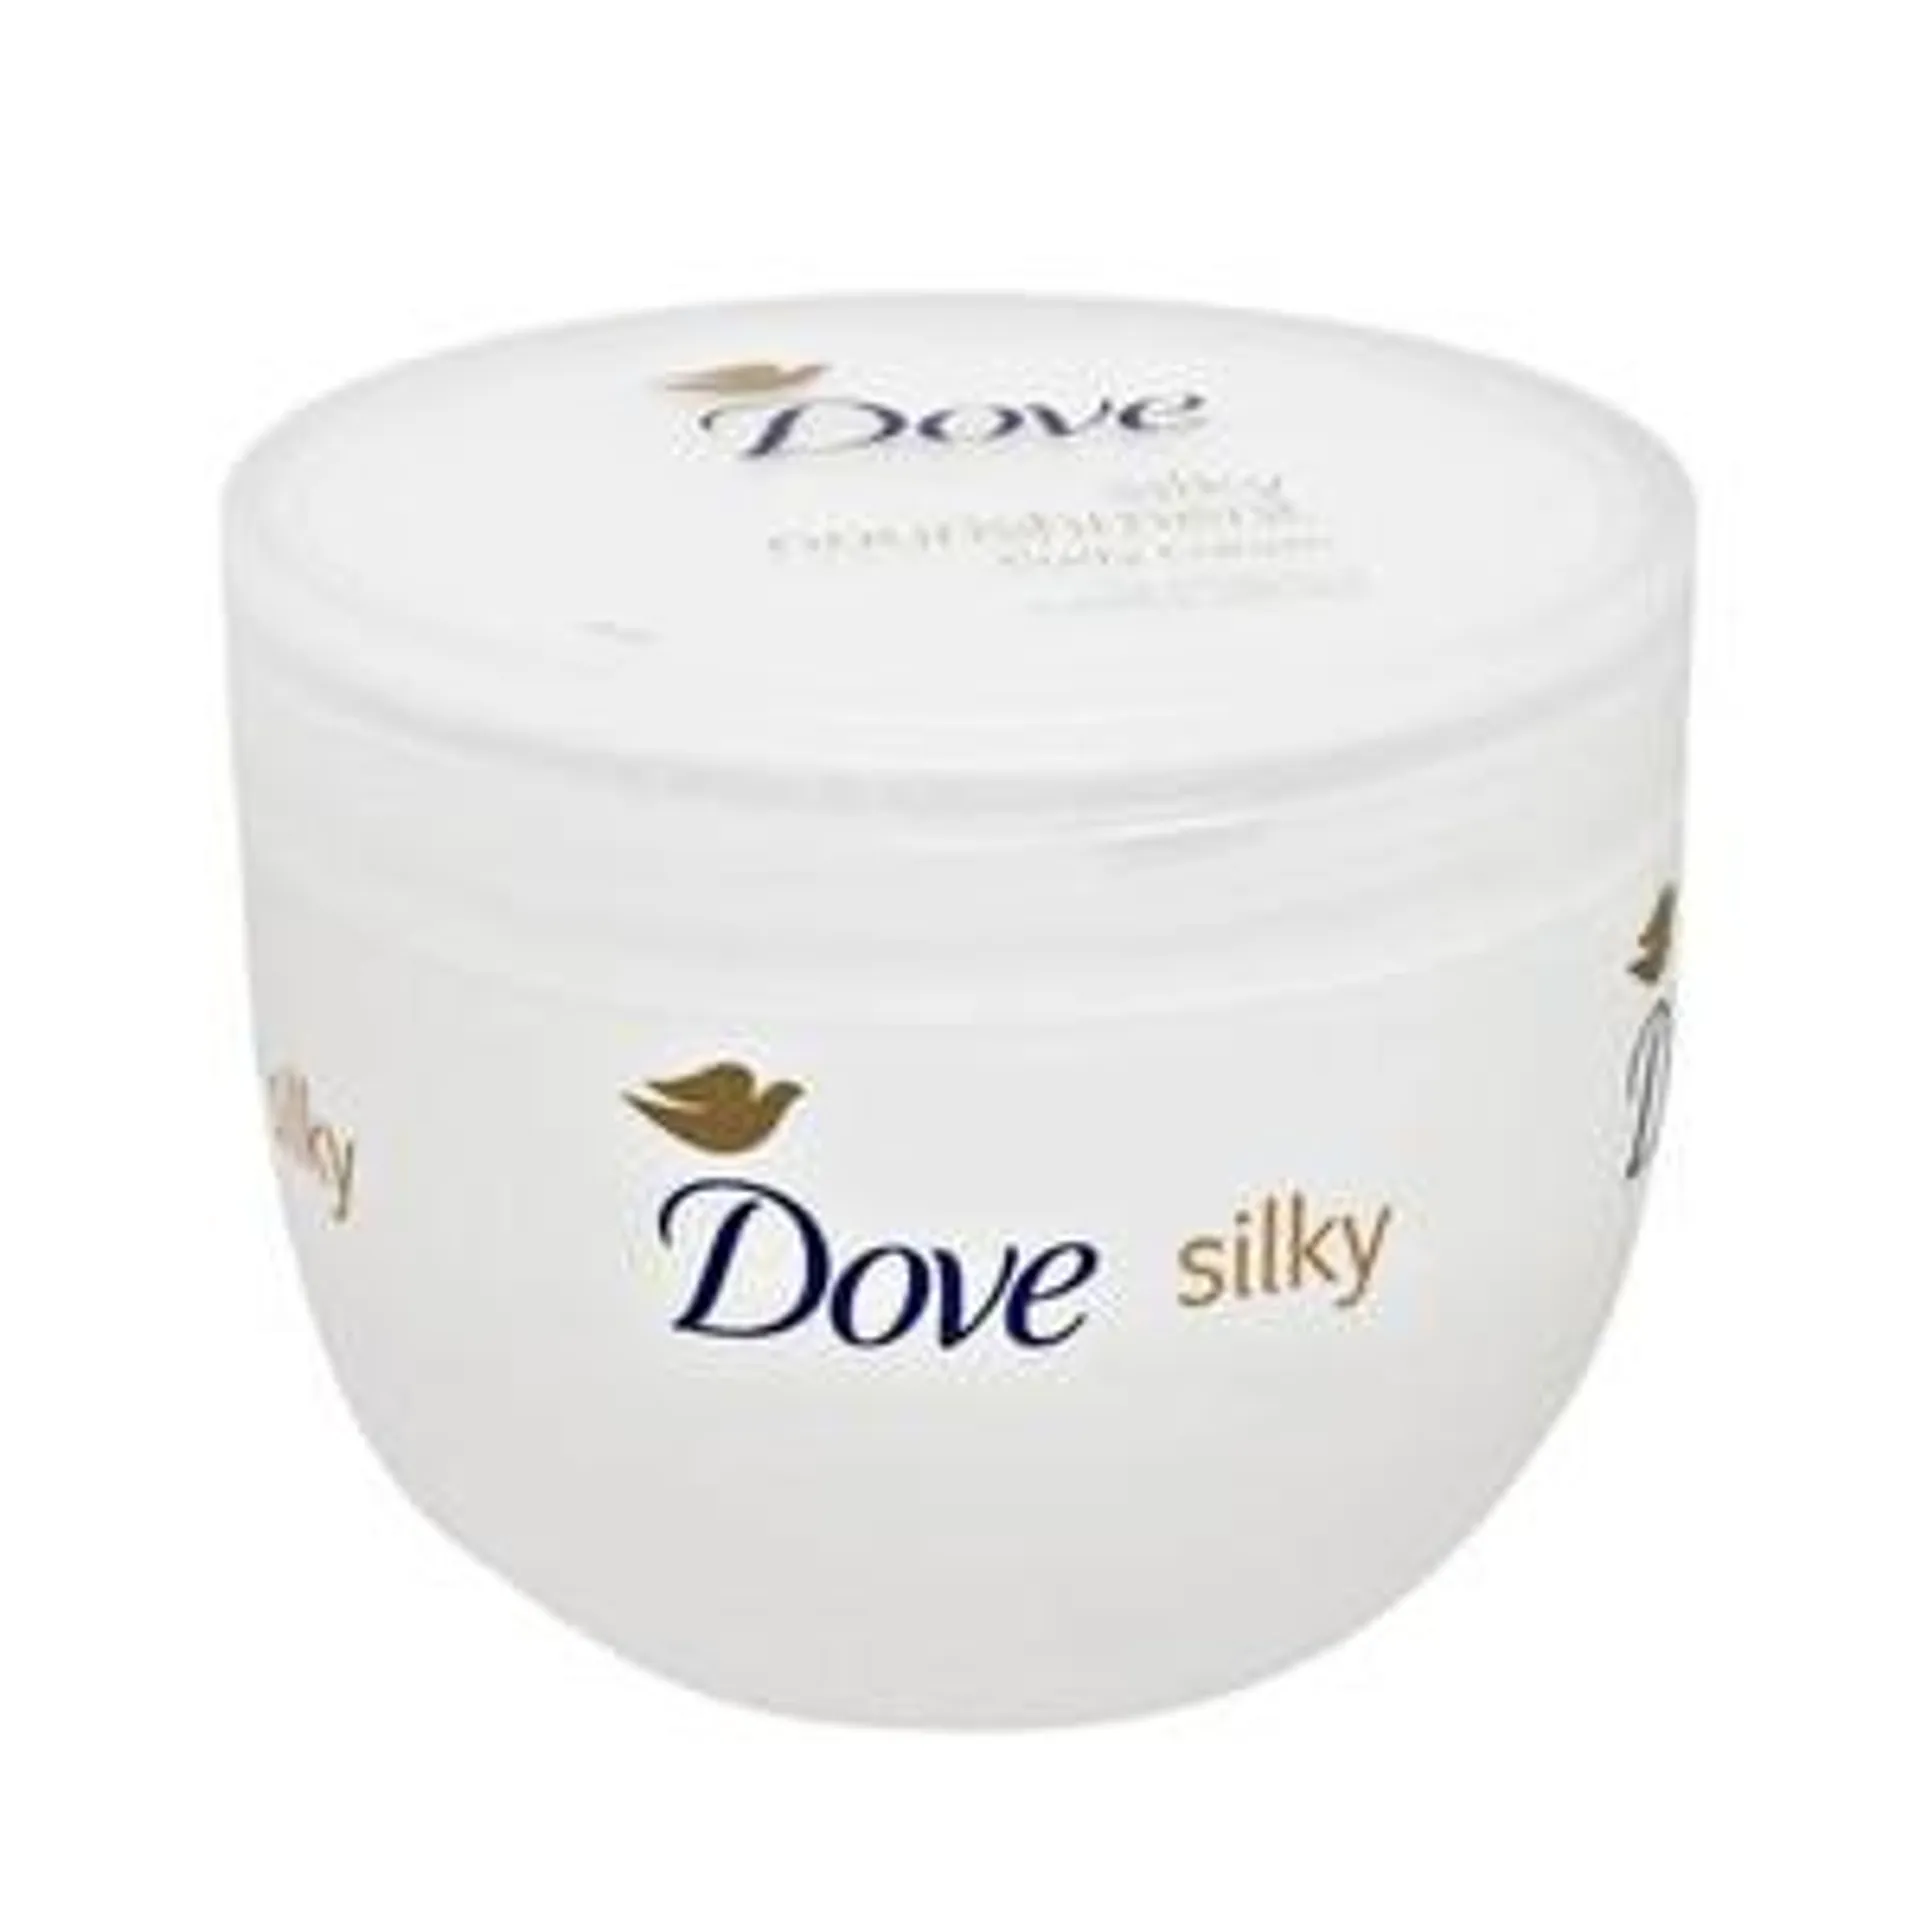 Dove Body Silk Lotion 300ml